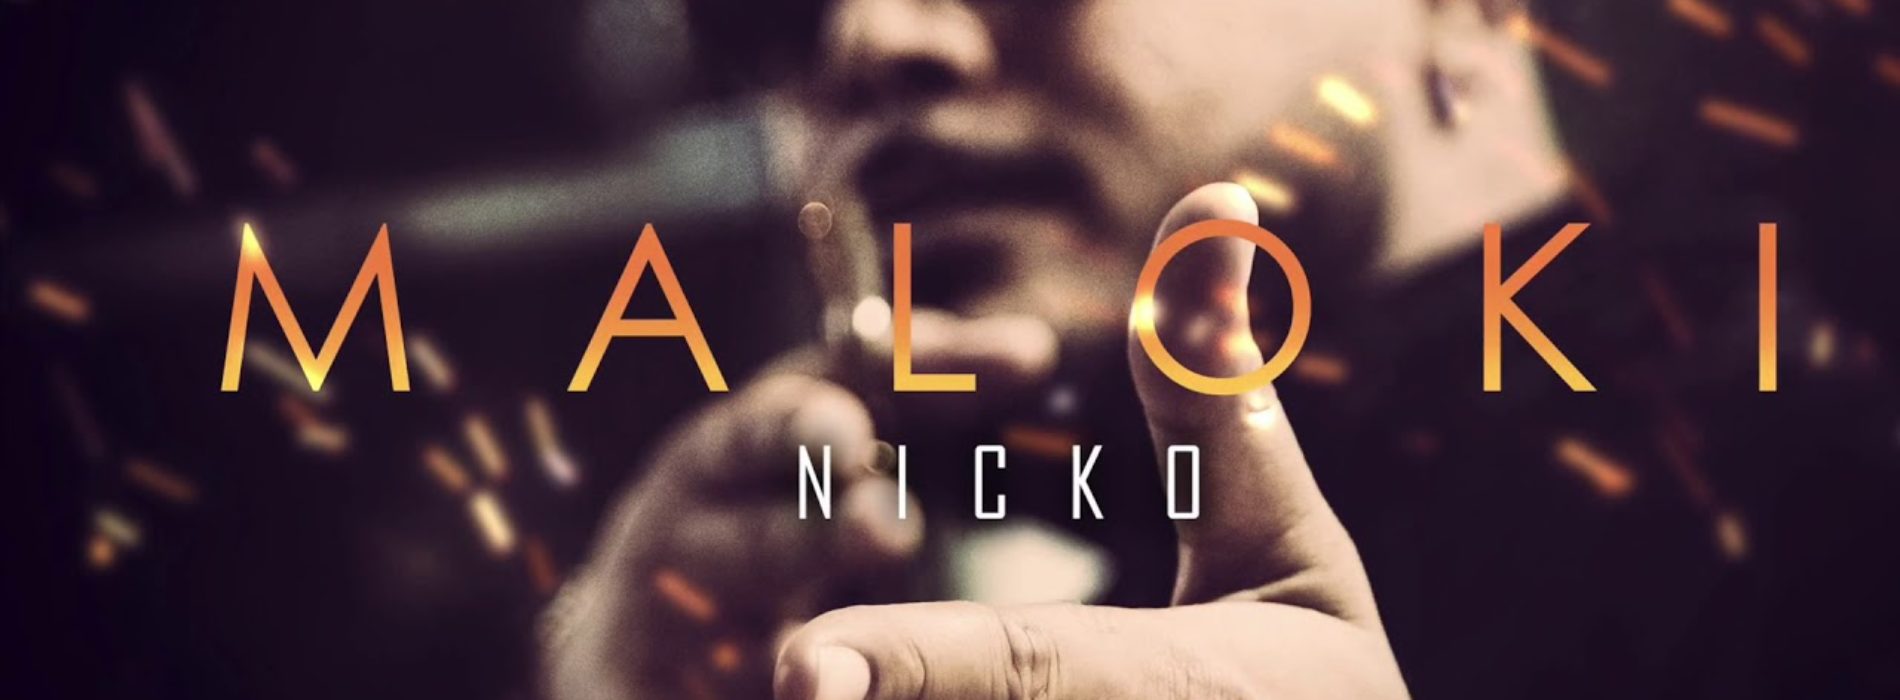 Nicko – MALOKI – Juillet 2020